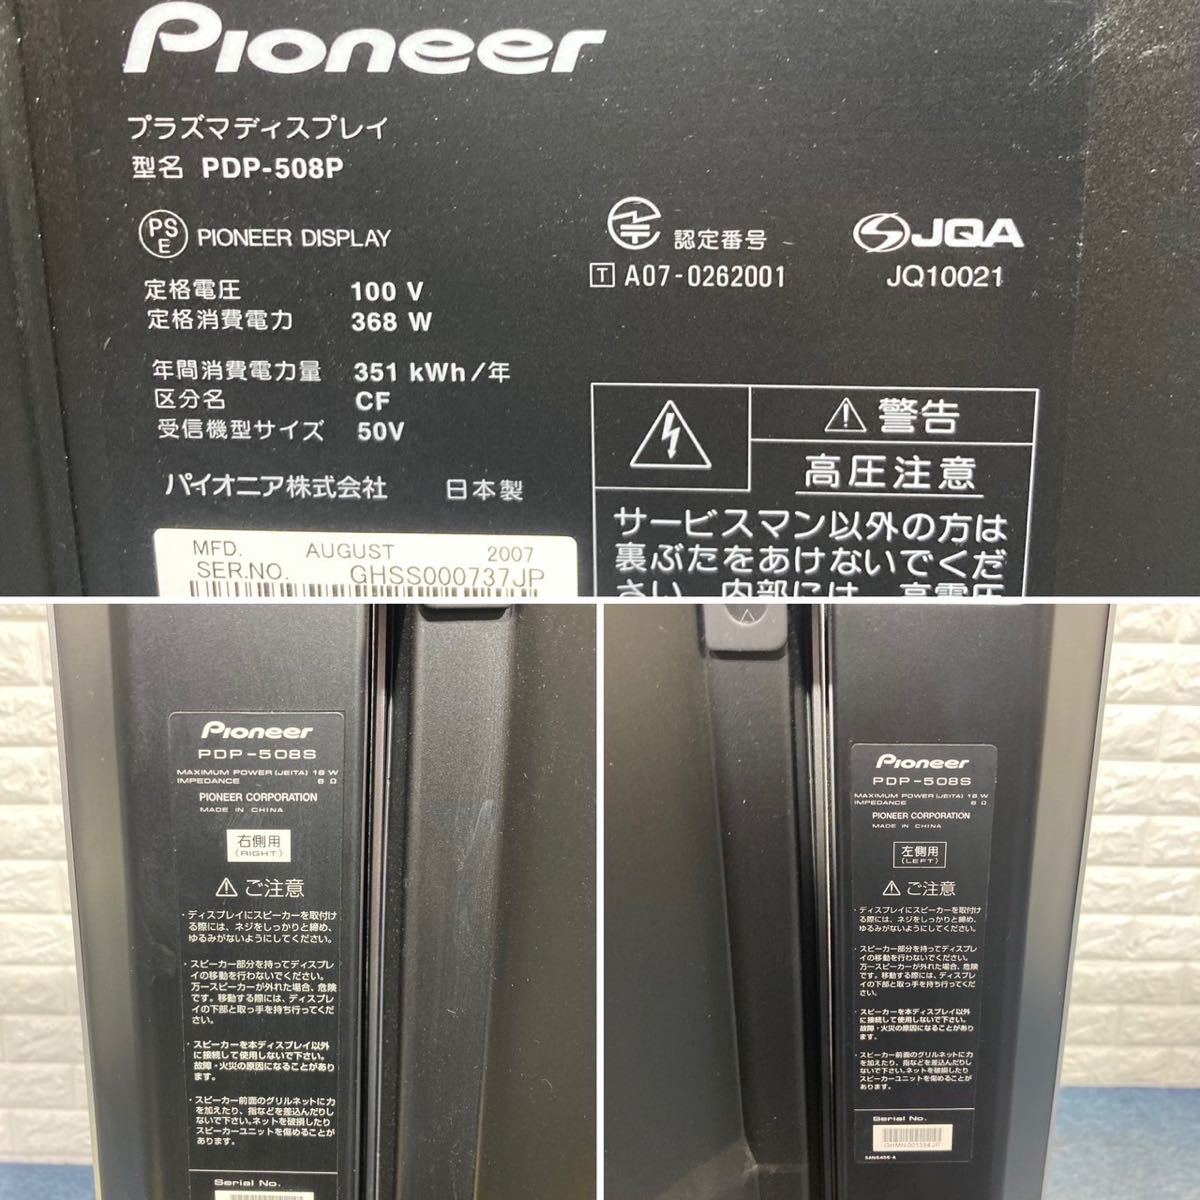 テレビ Pioneer プラズマテレビ KURO 家電 50V型 PDP-508P D080 ホット